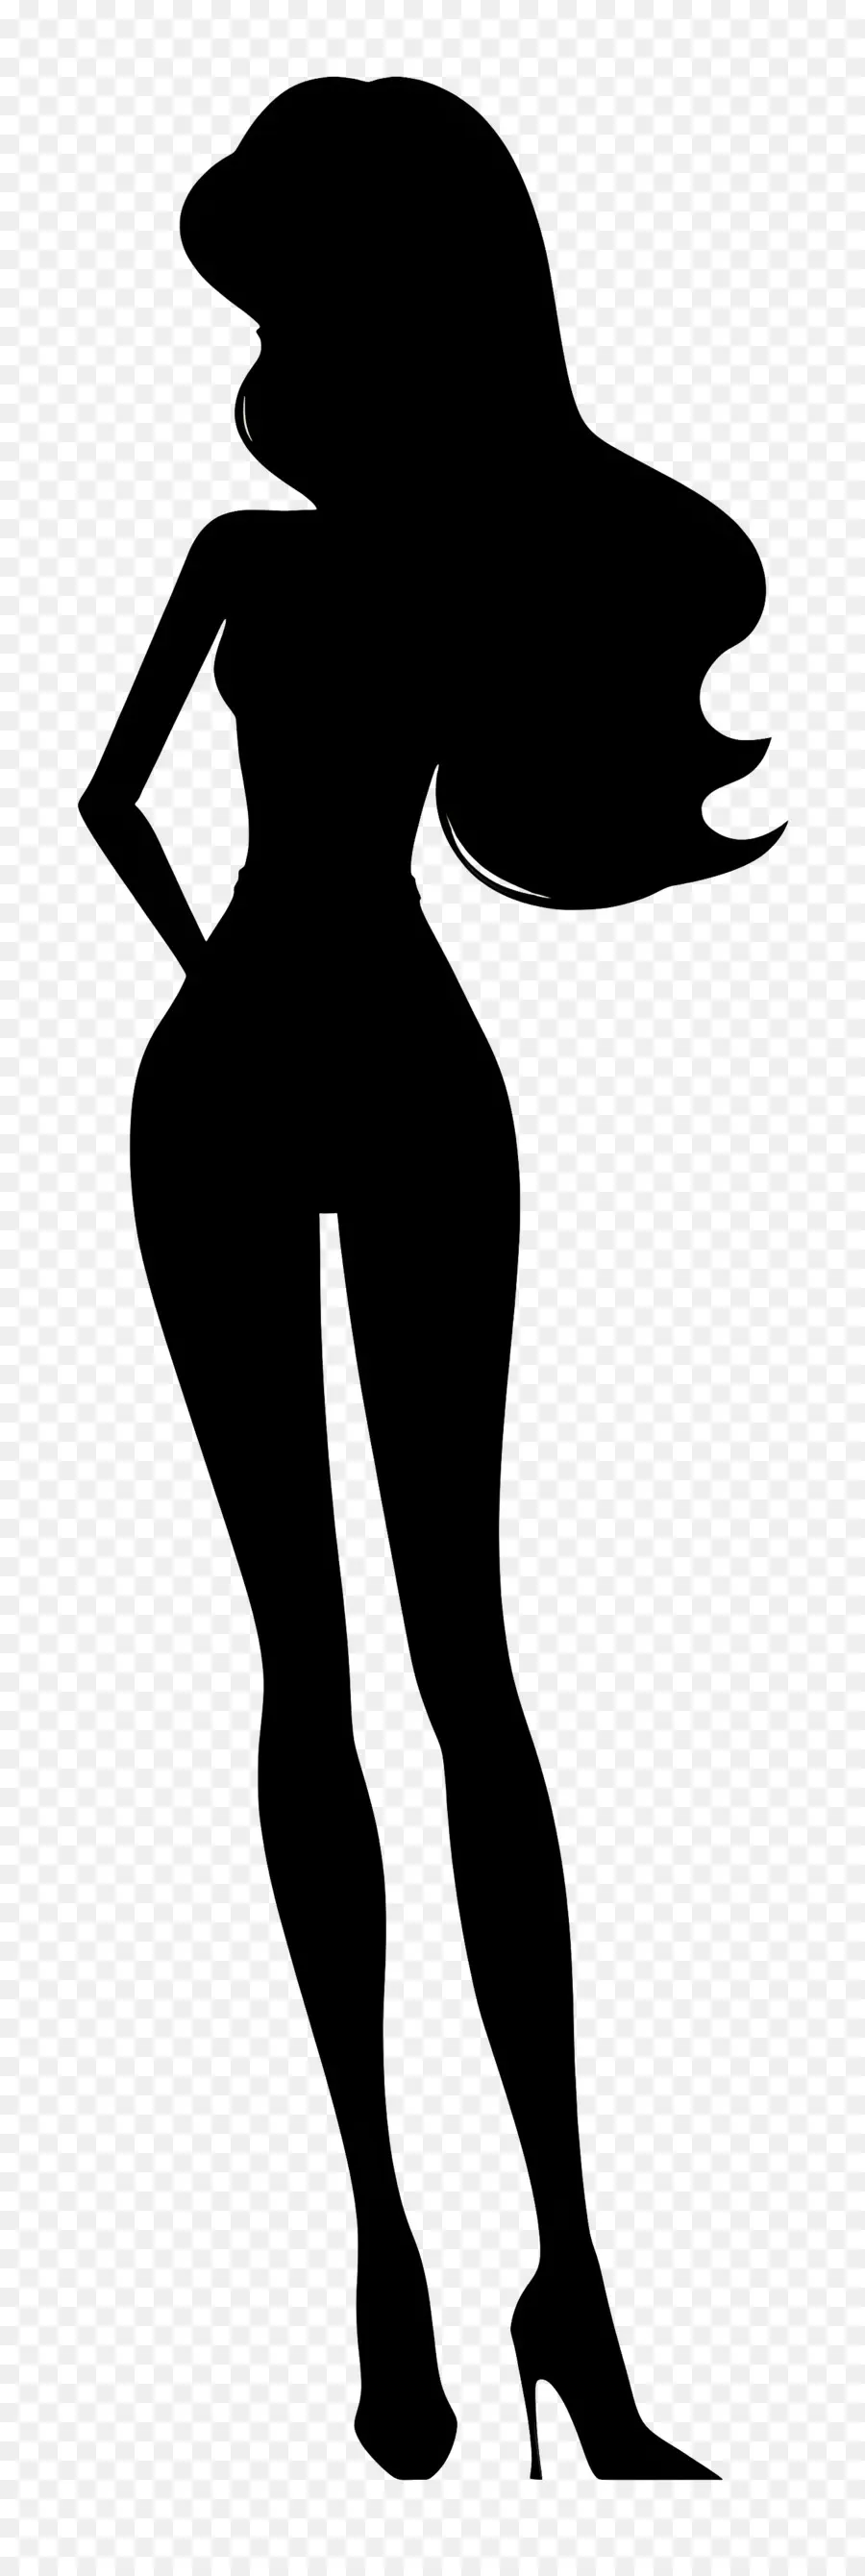 Barbie Silhouette Silhouette Frau Arme ausgestreckt lang und schlank ausgestreckt - Große, elegante Frau mit ausgestreckten Armen Pose